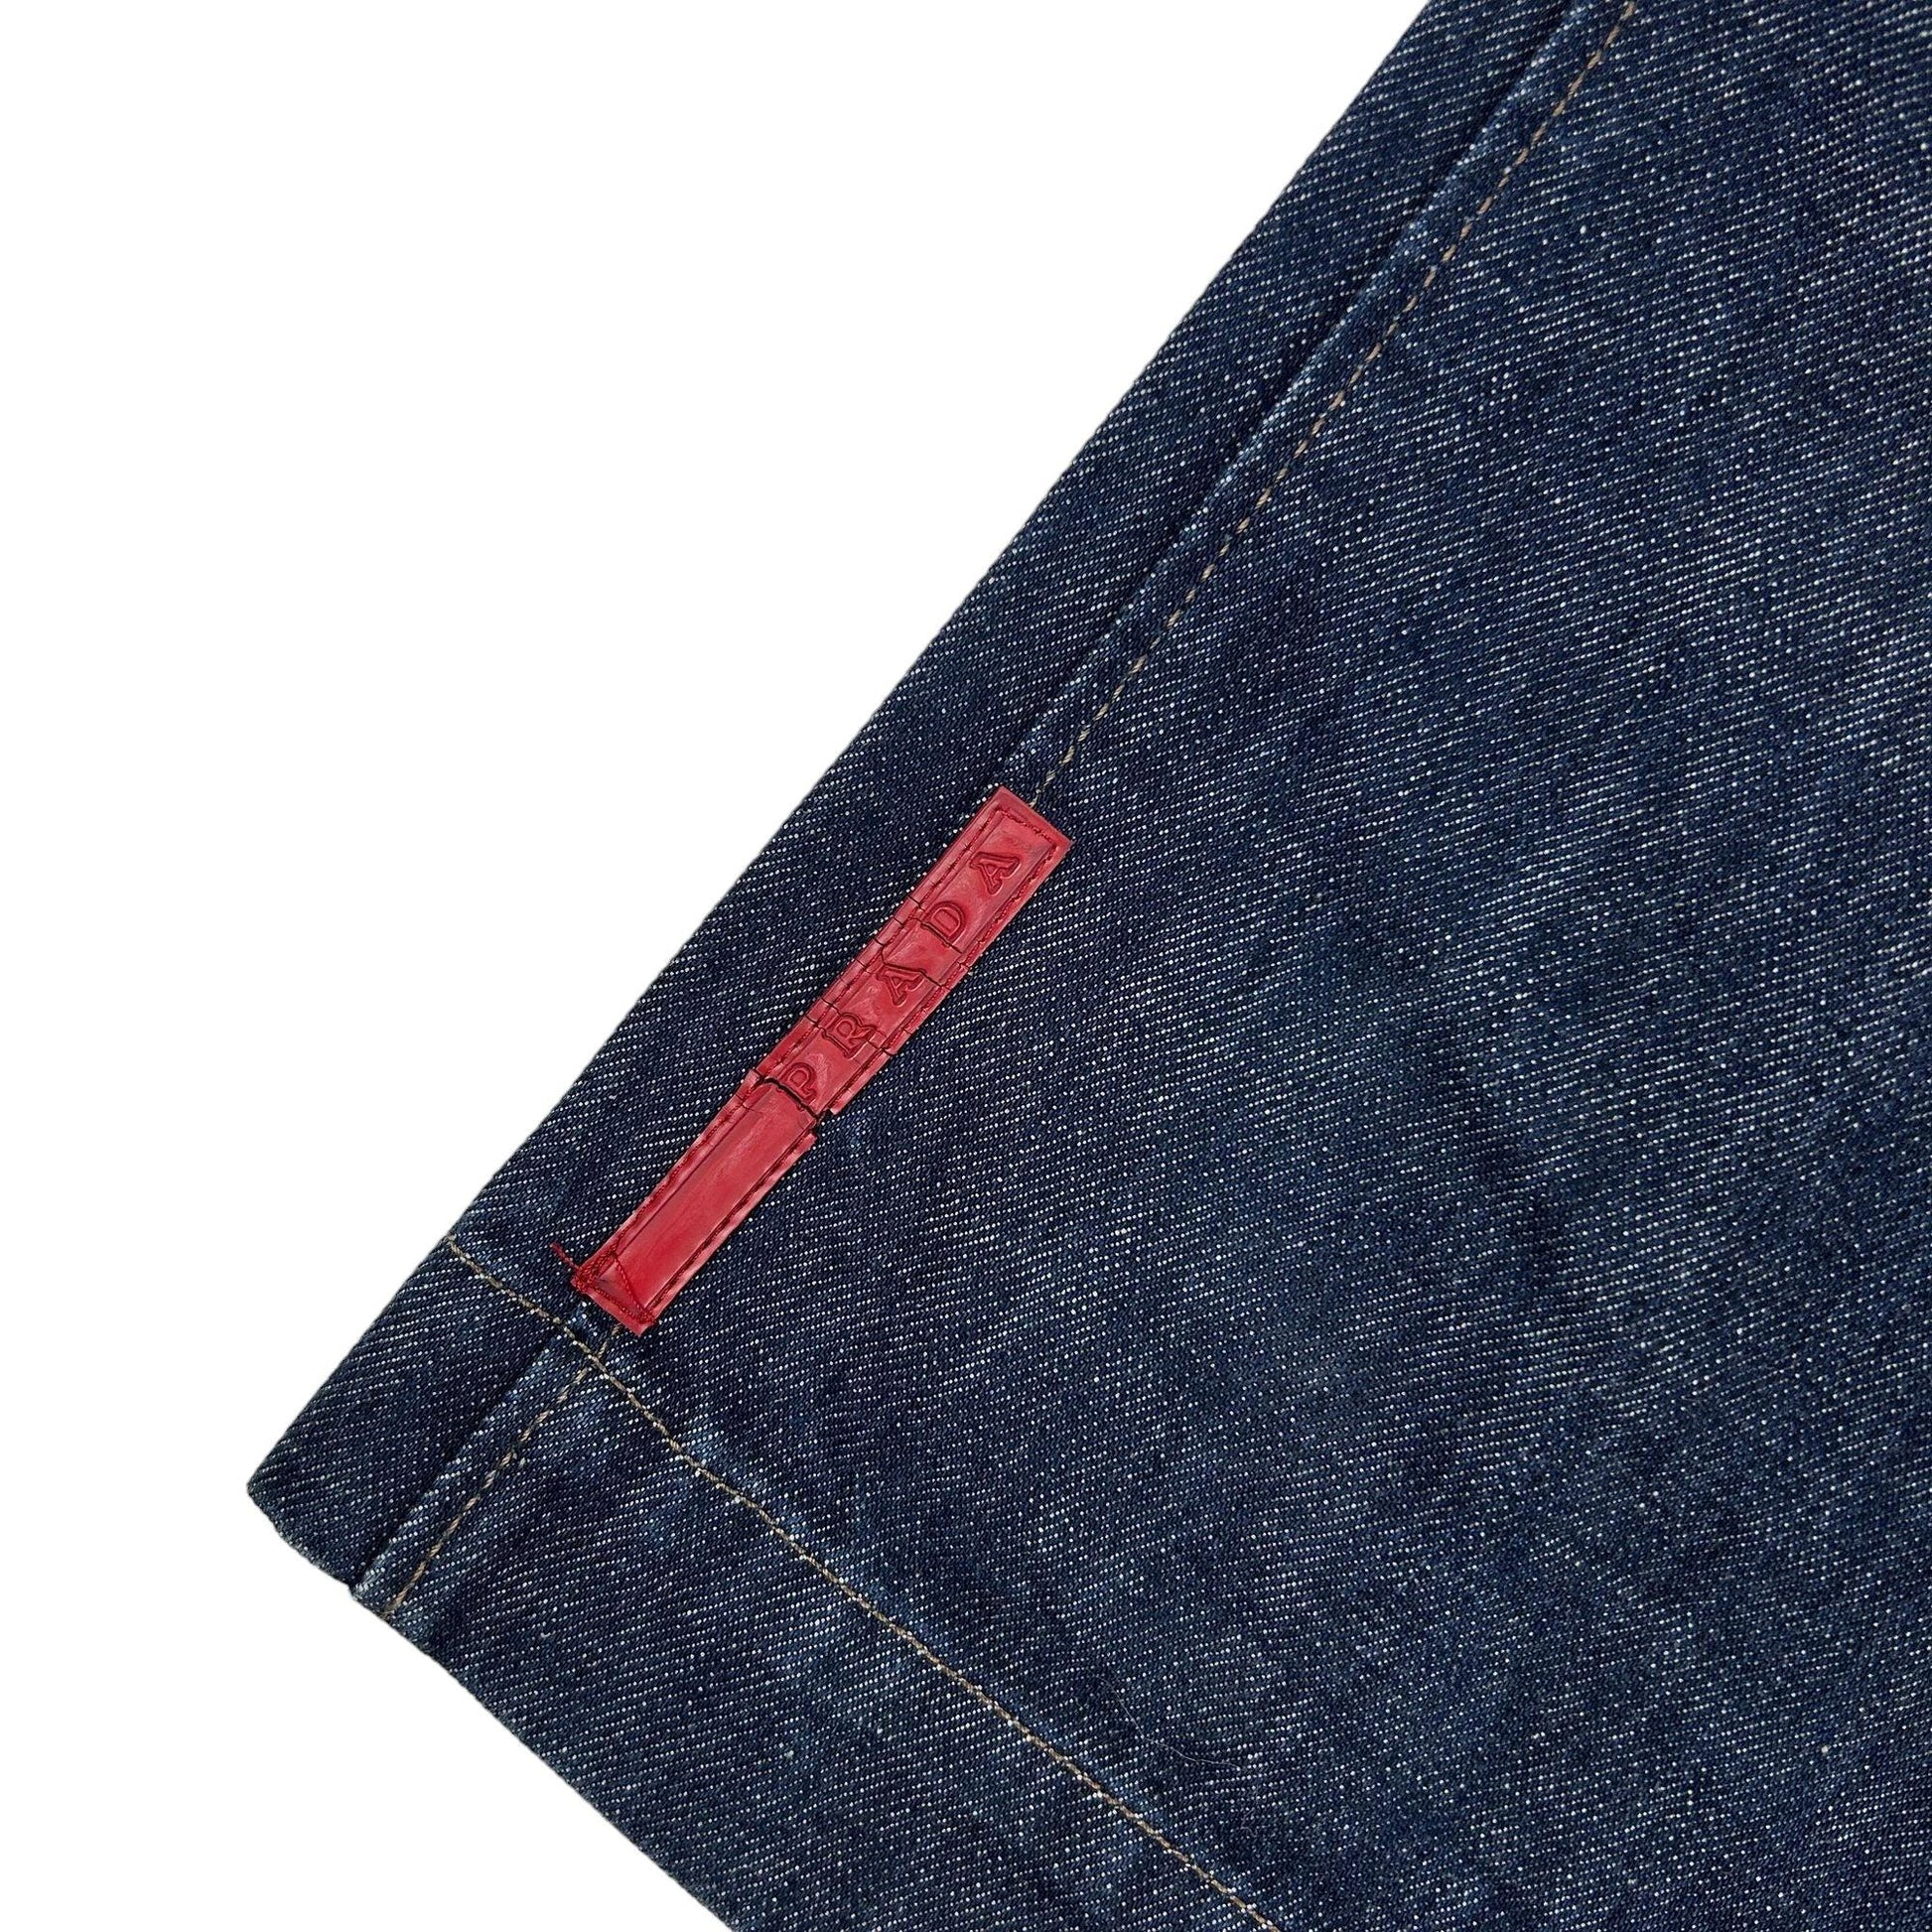 Vintage Prada Sport Denim Jeans Size W28 - Known Source